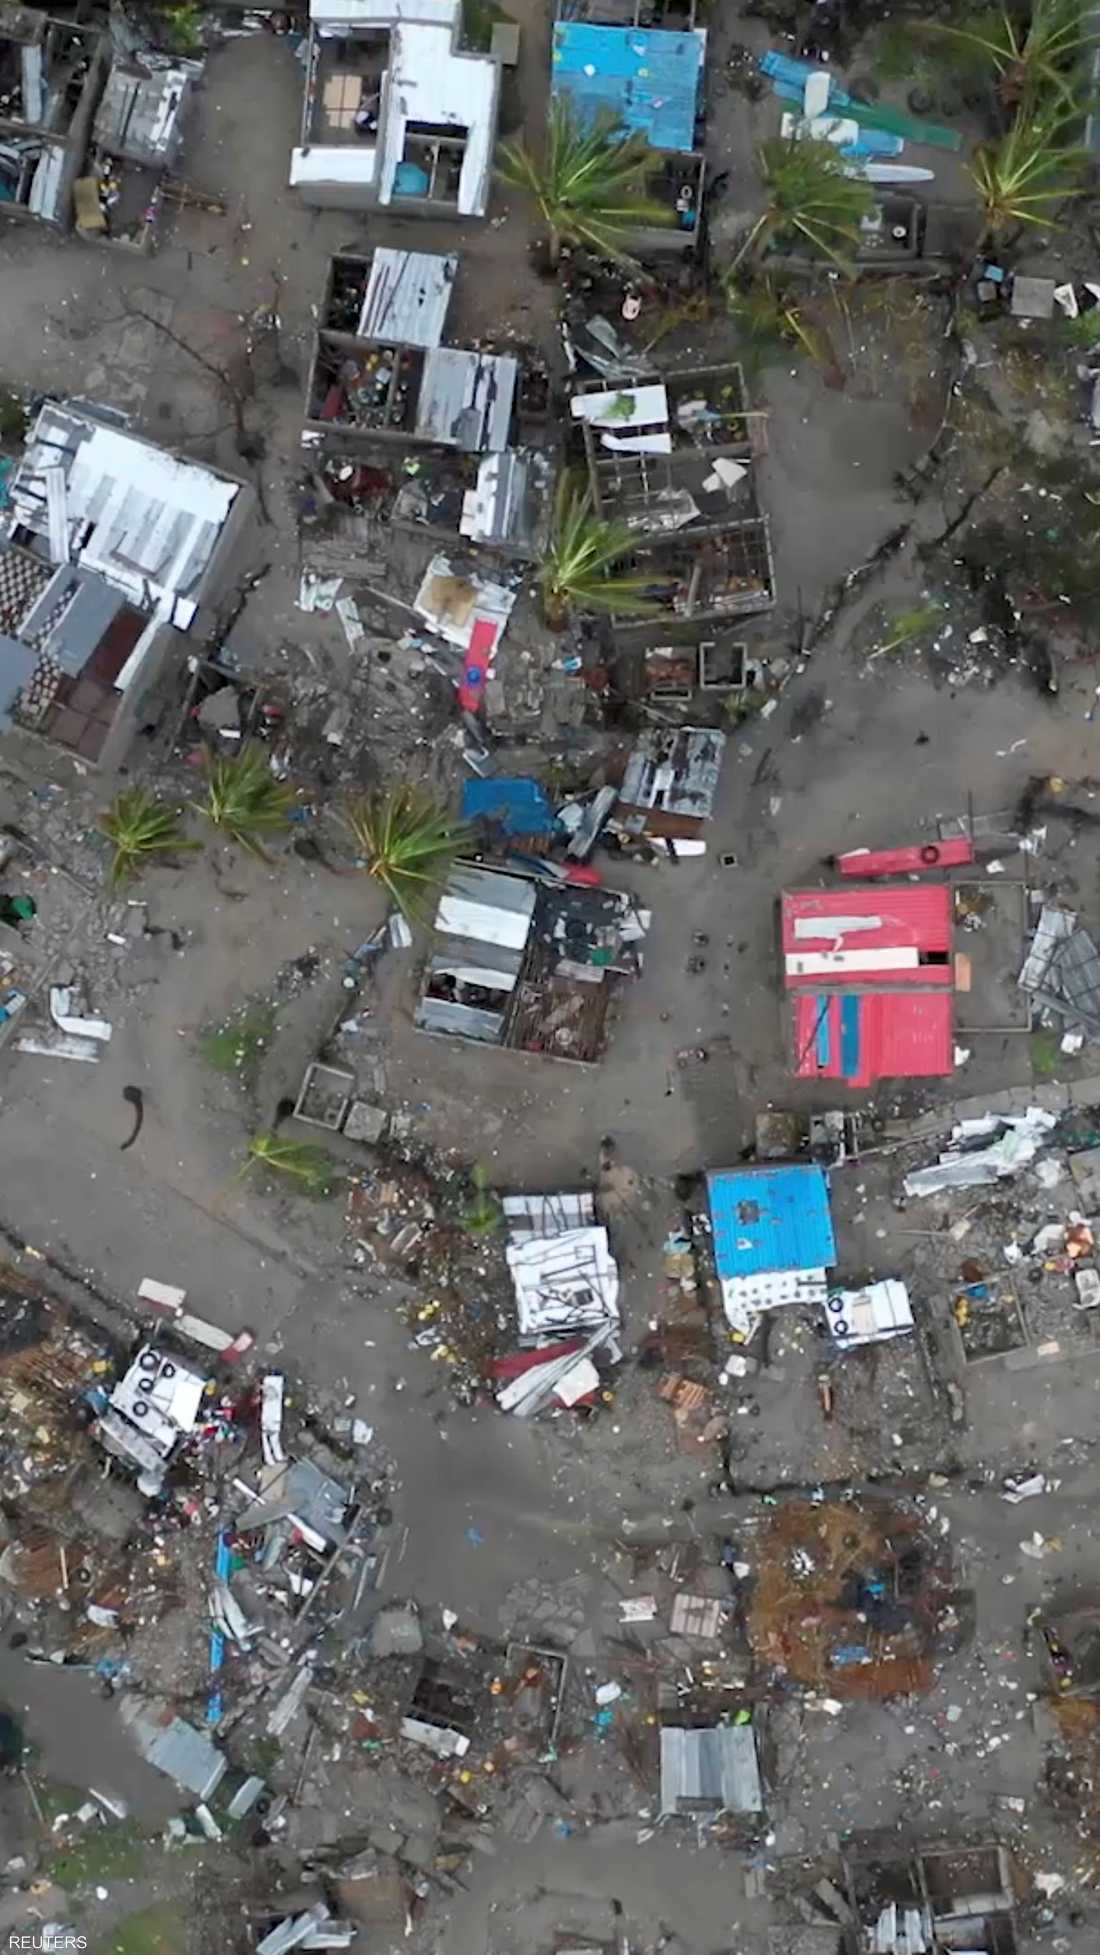 يرجح أن يكون الإعصار "إيداي"، الذي ضرب البلاد خلال الأيام الماضية، قد أودى بحياة ألف شخص.